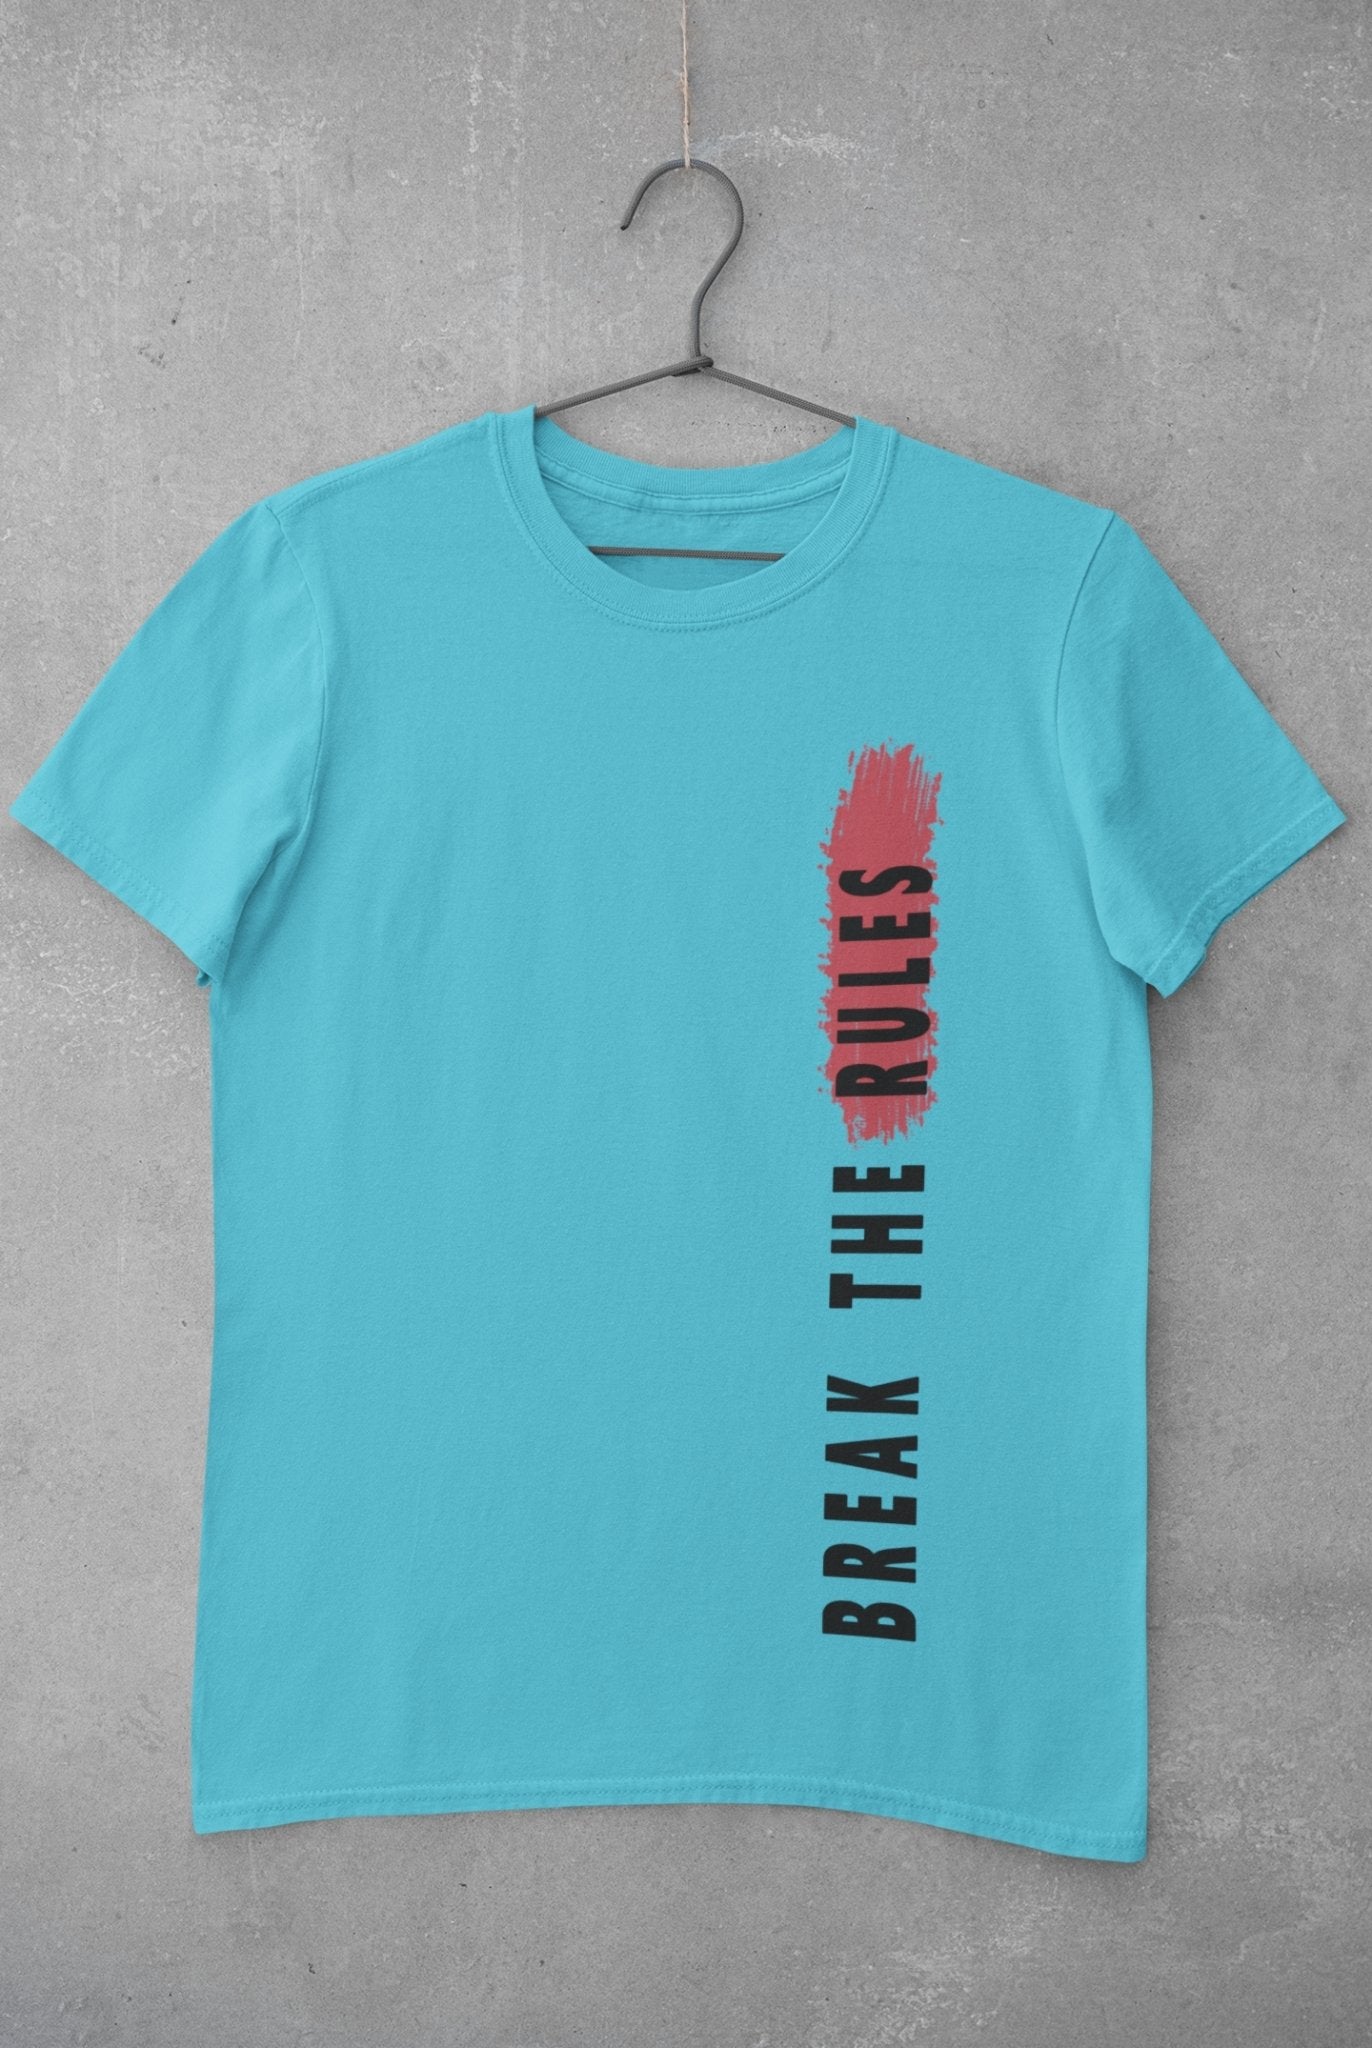 Break The Rules Mens Half Sleeves T-shirt- FunkyTeesClub - Funky Tees Club